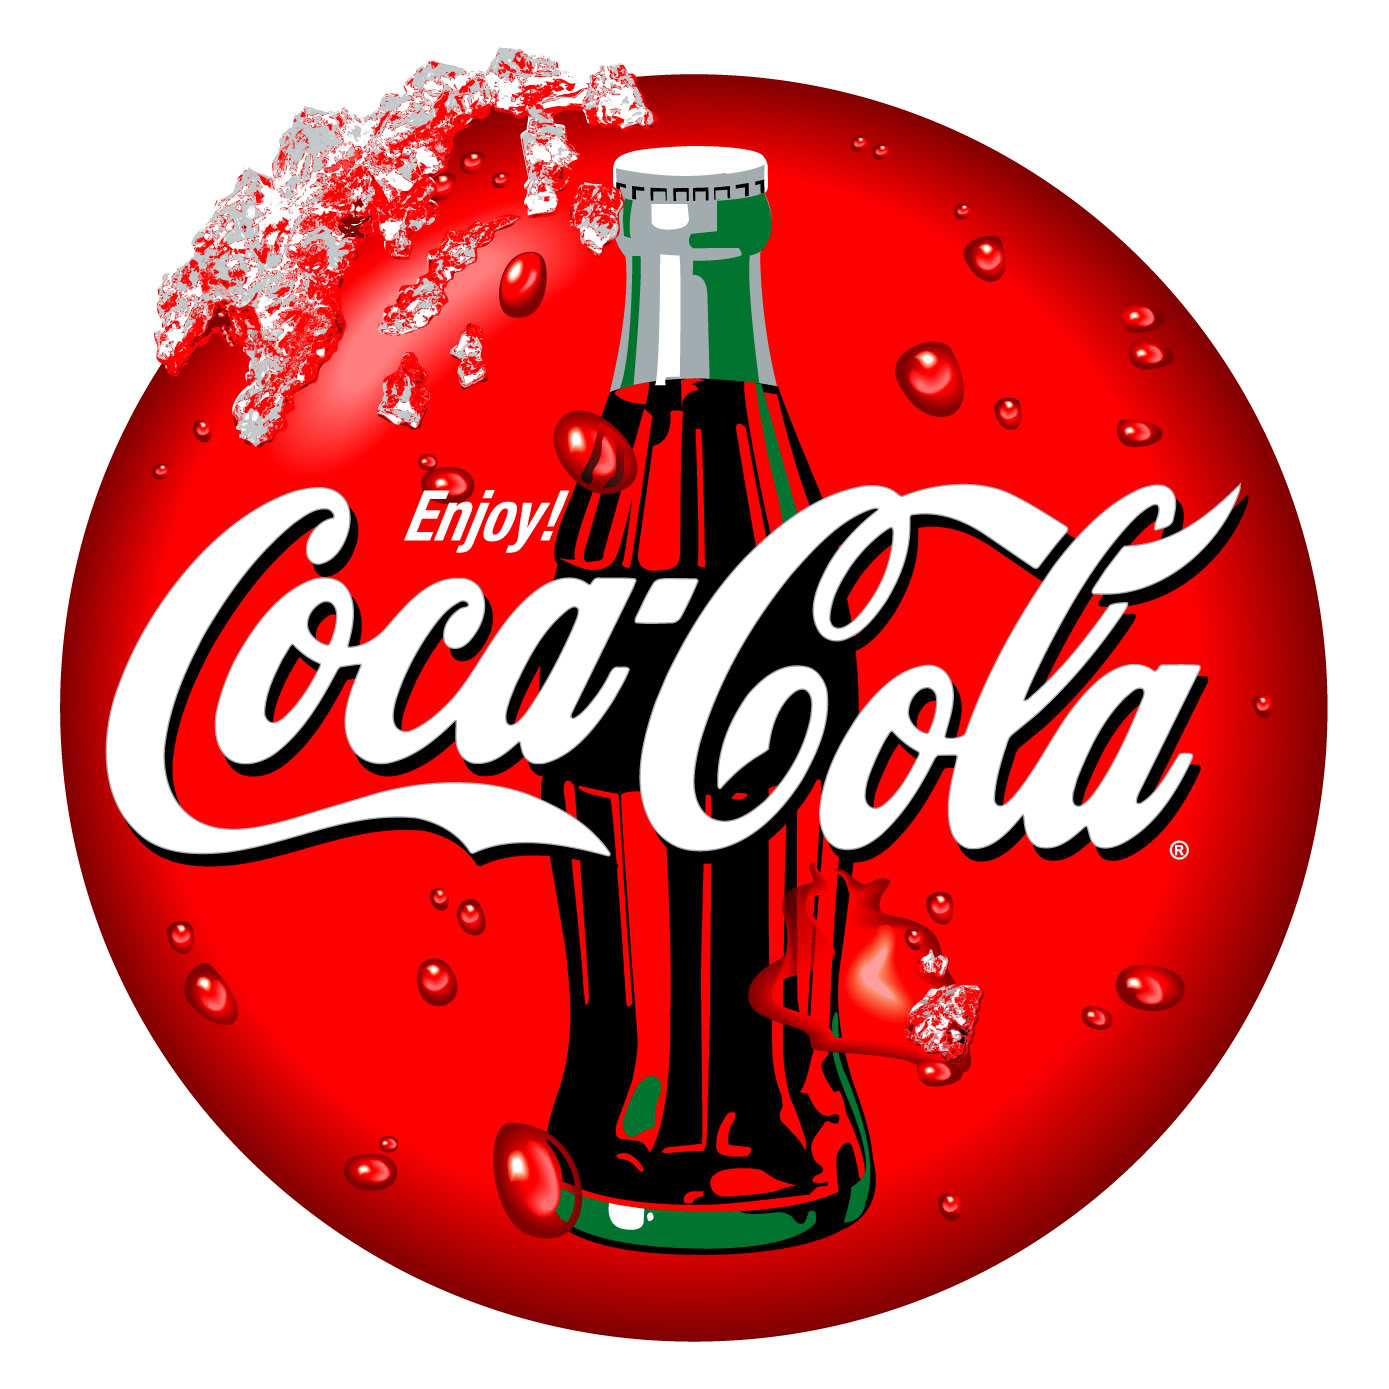 Comprar acciones Coca-Cola: cómo invertir en Coca-Cola sin comisiones